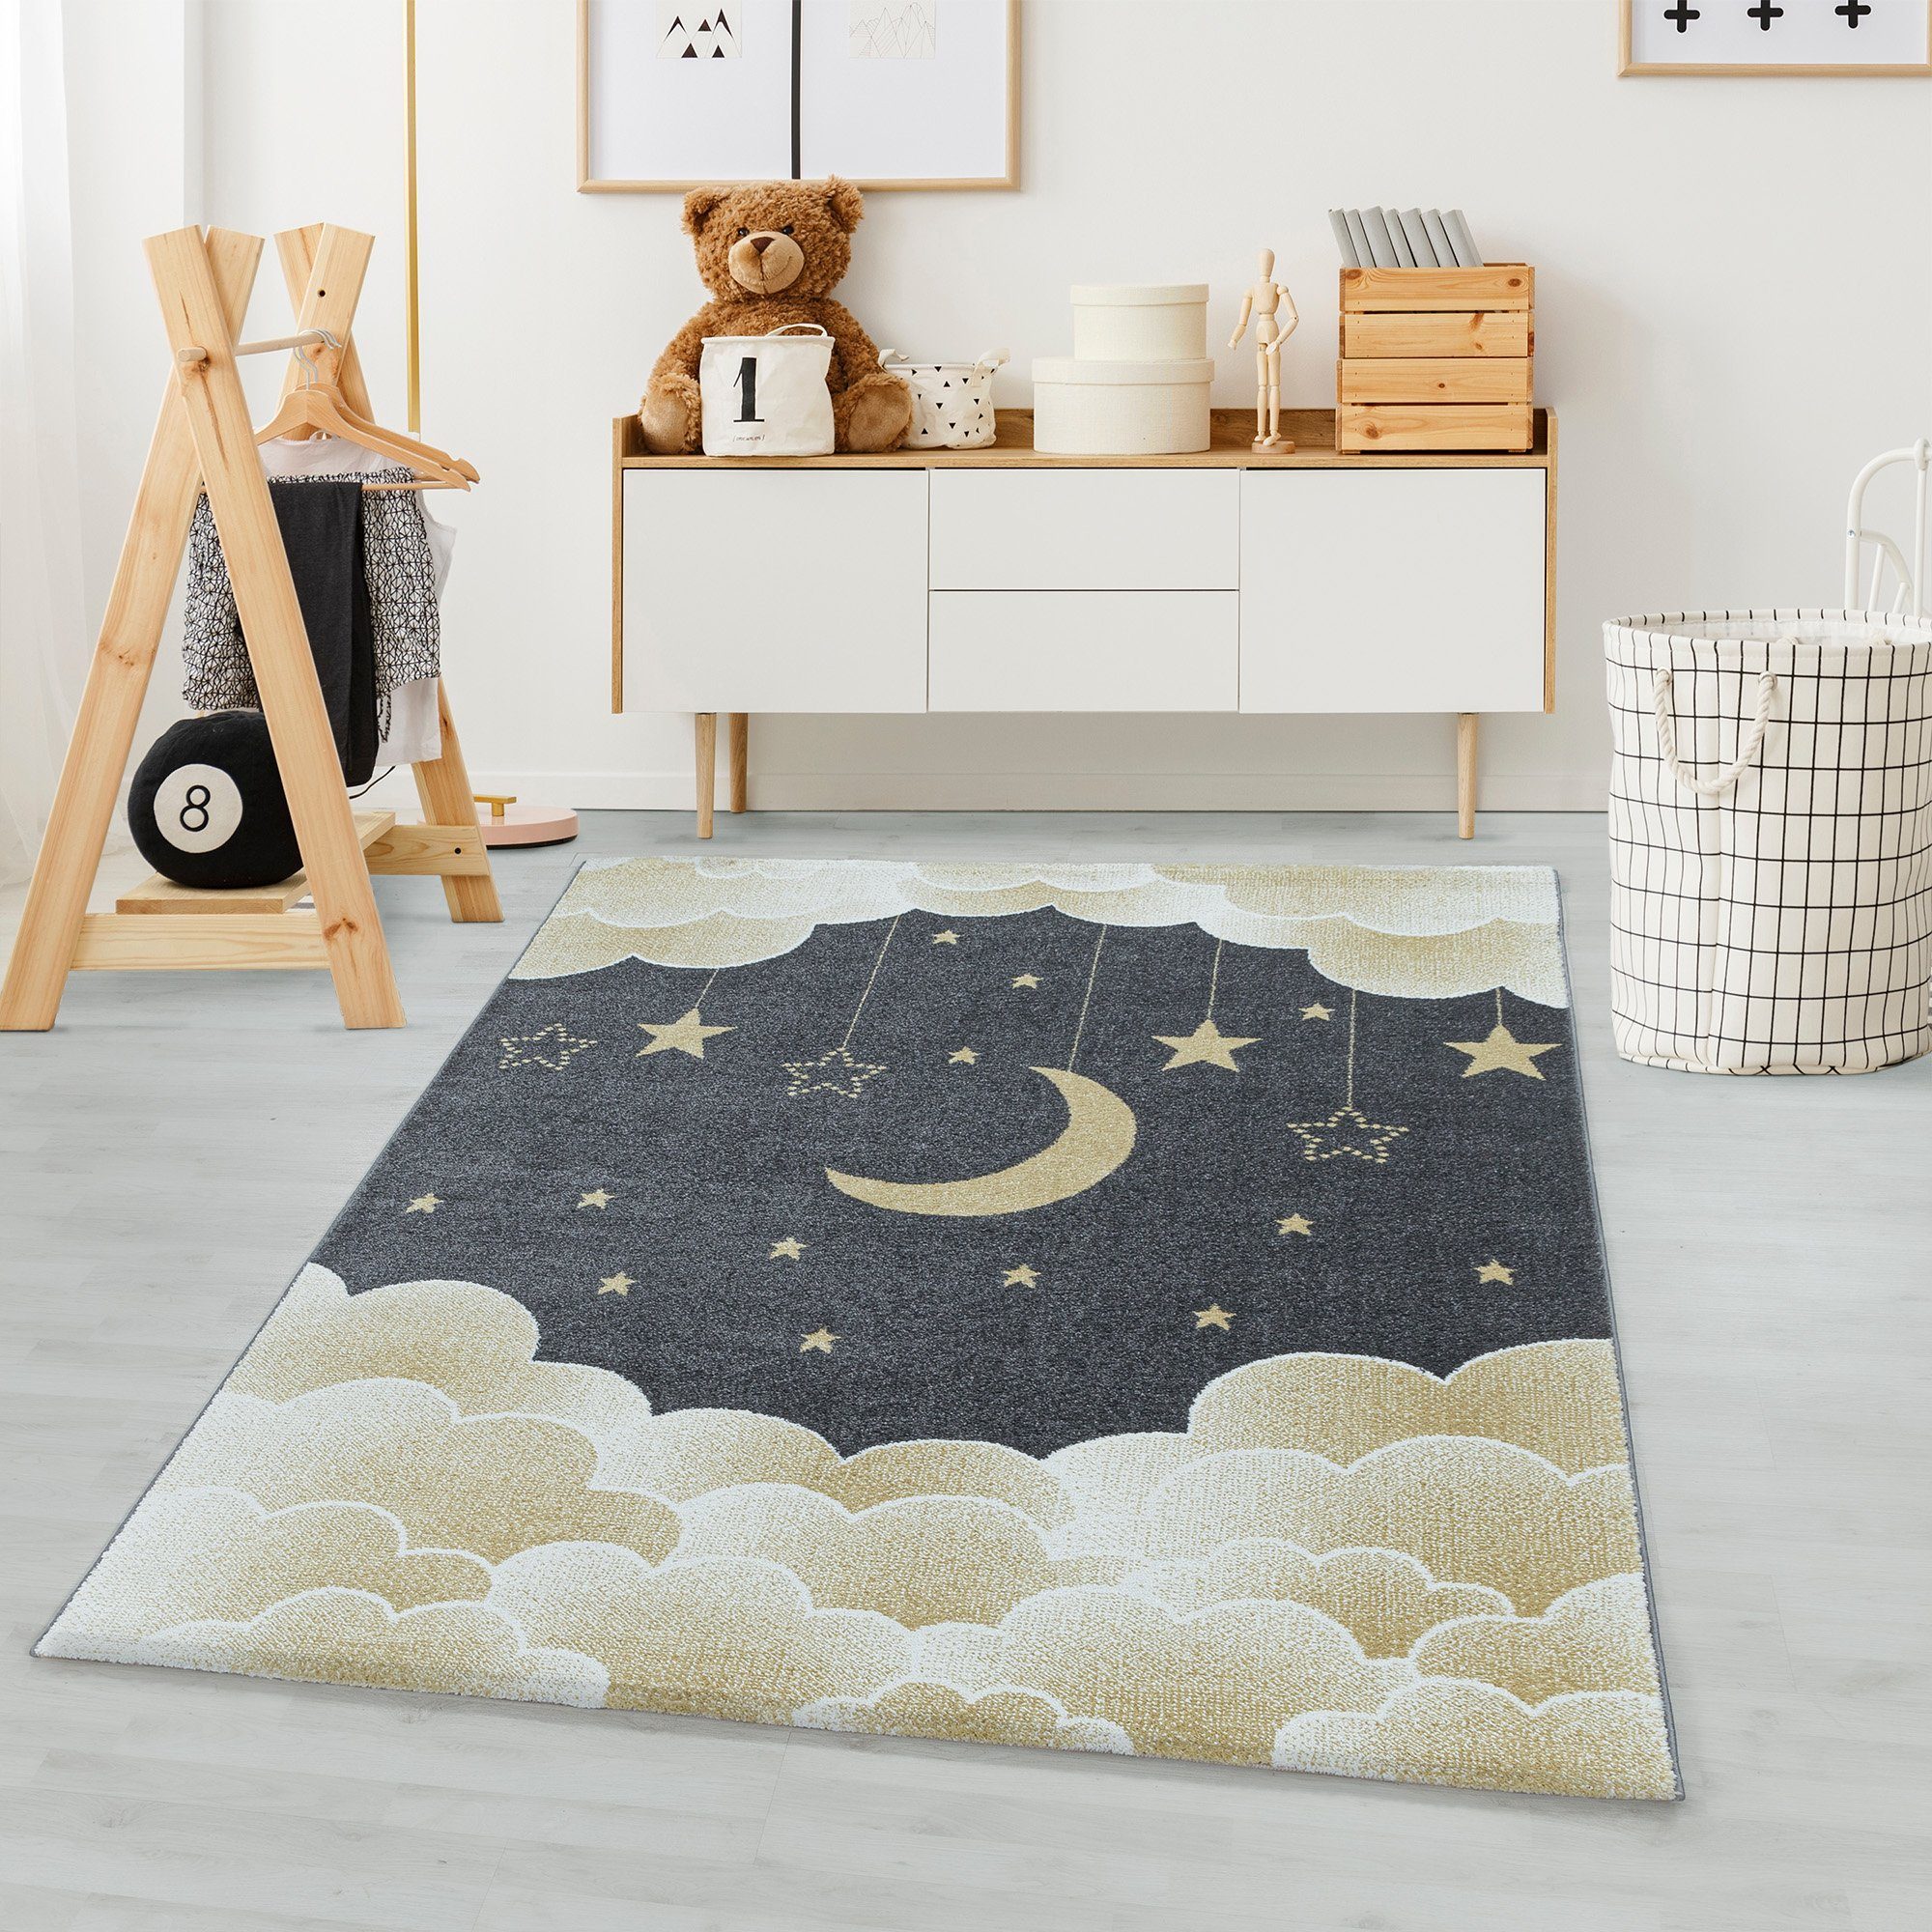 Kinderteppich Mond- und Sterne Design, Carpetsale24, Läufer, Höhe: 11 mm, Teppich Kinderzimmer Mond- und Sterne Design Pflegeleicht